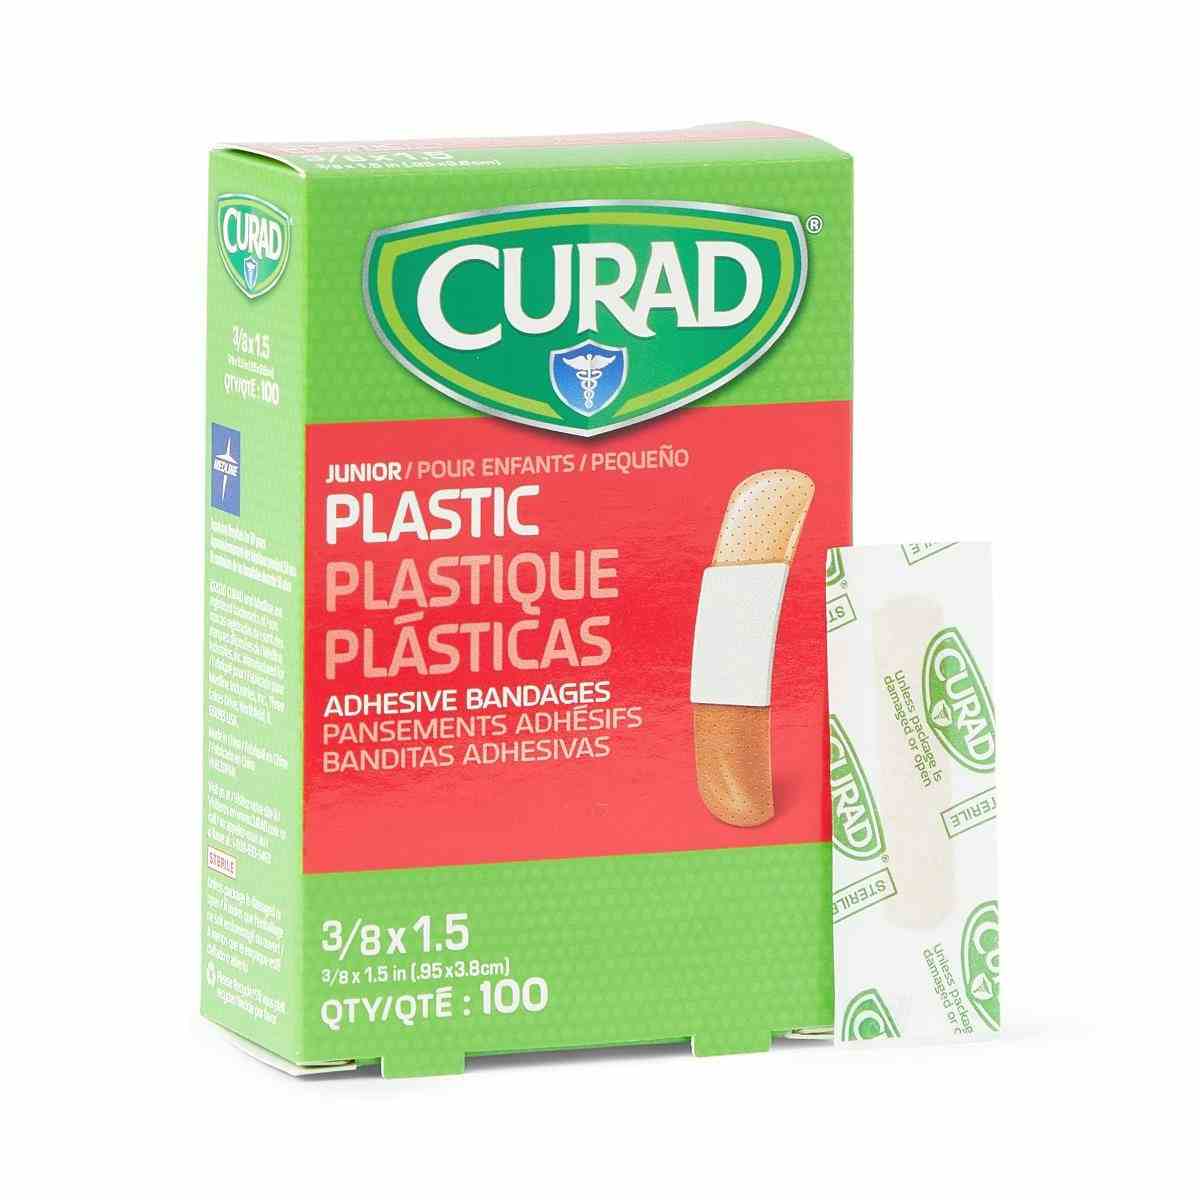 Curad Junior Plastic Adhesive Bandages